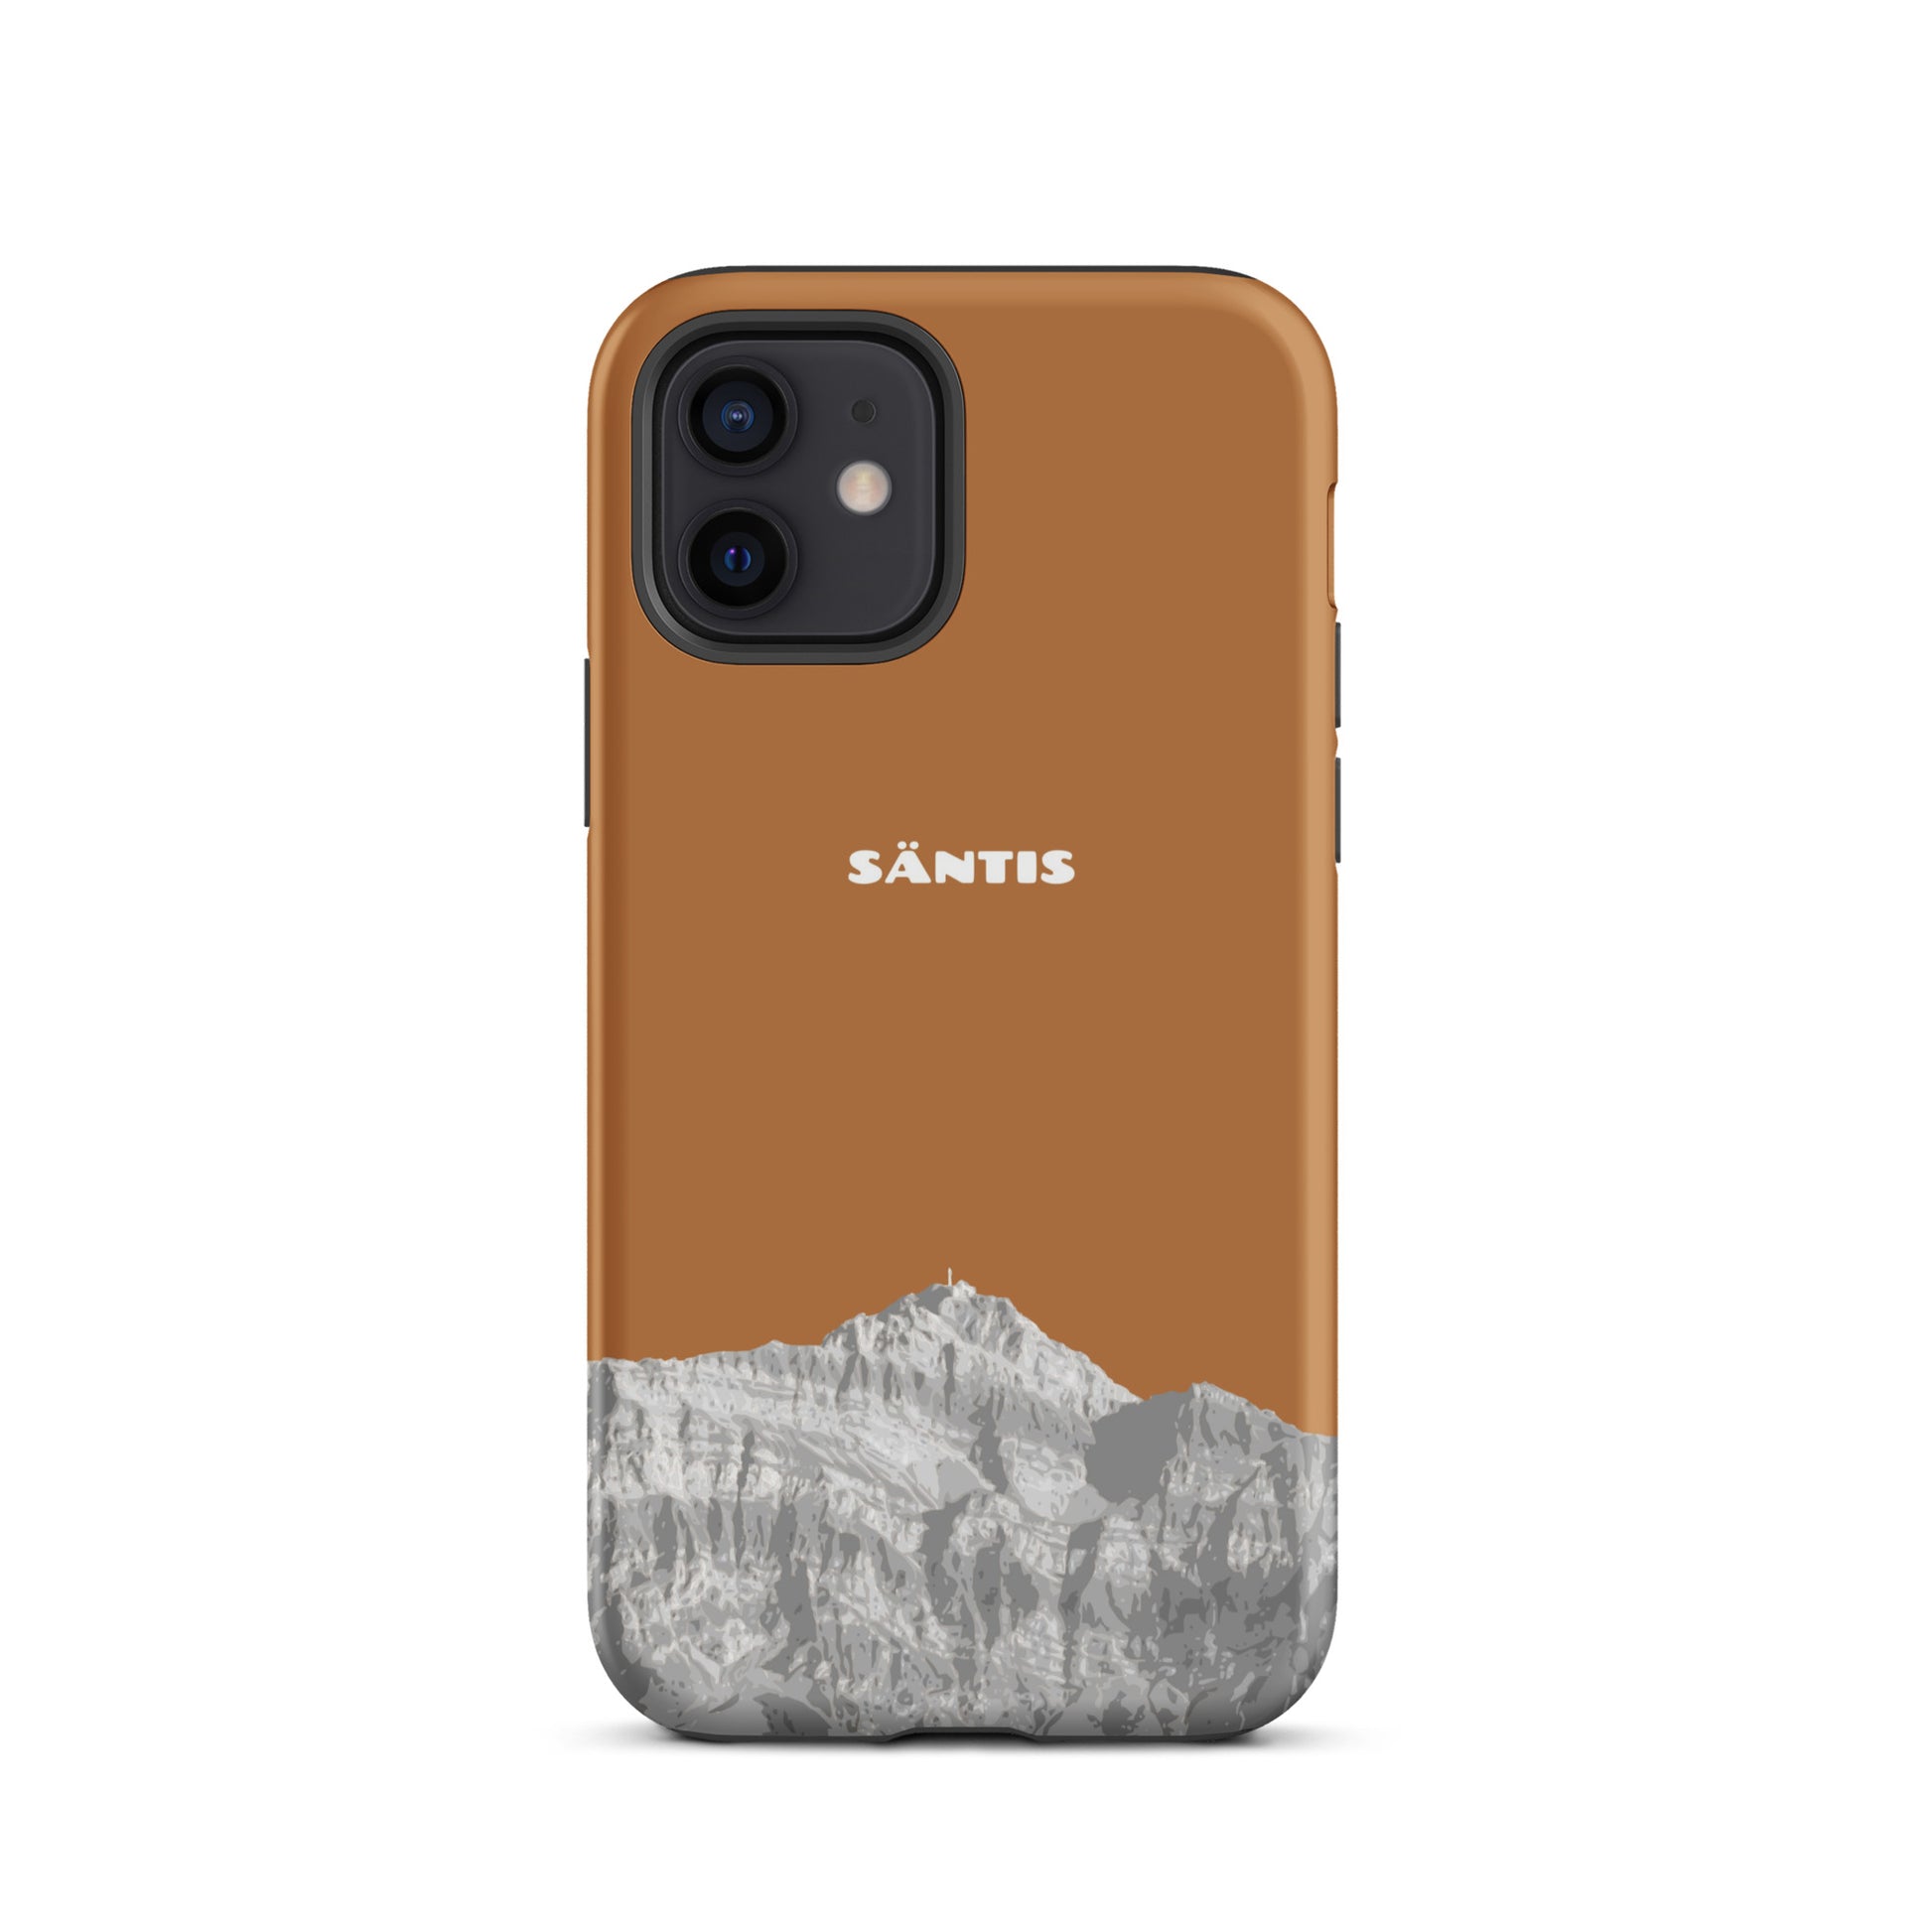 Hülle für das iPhone 12 von Apple in der Farbe Kupfer, dass den Säntis im Alpstein zeigt.